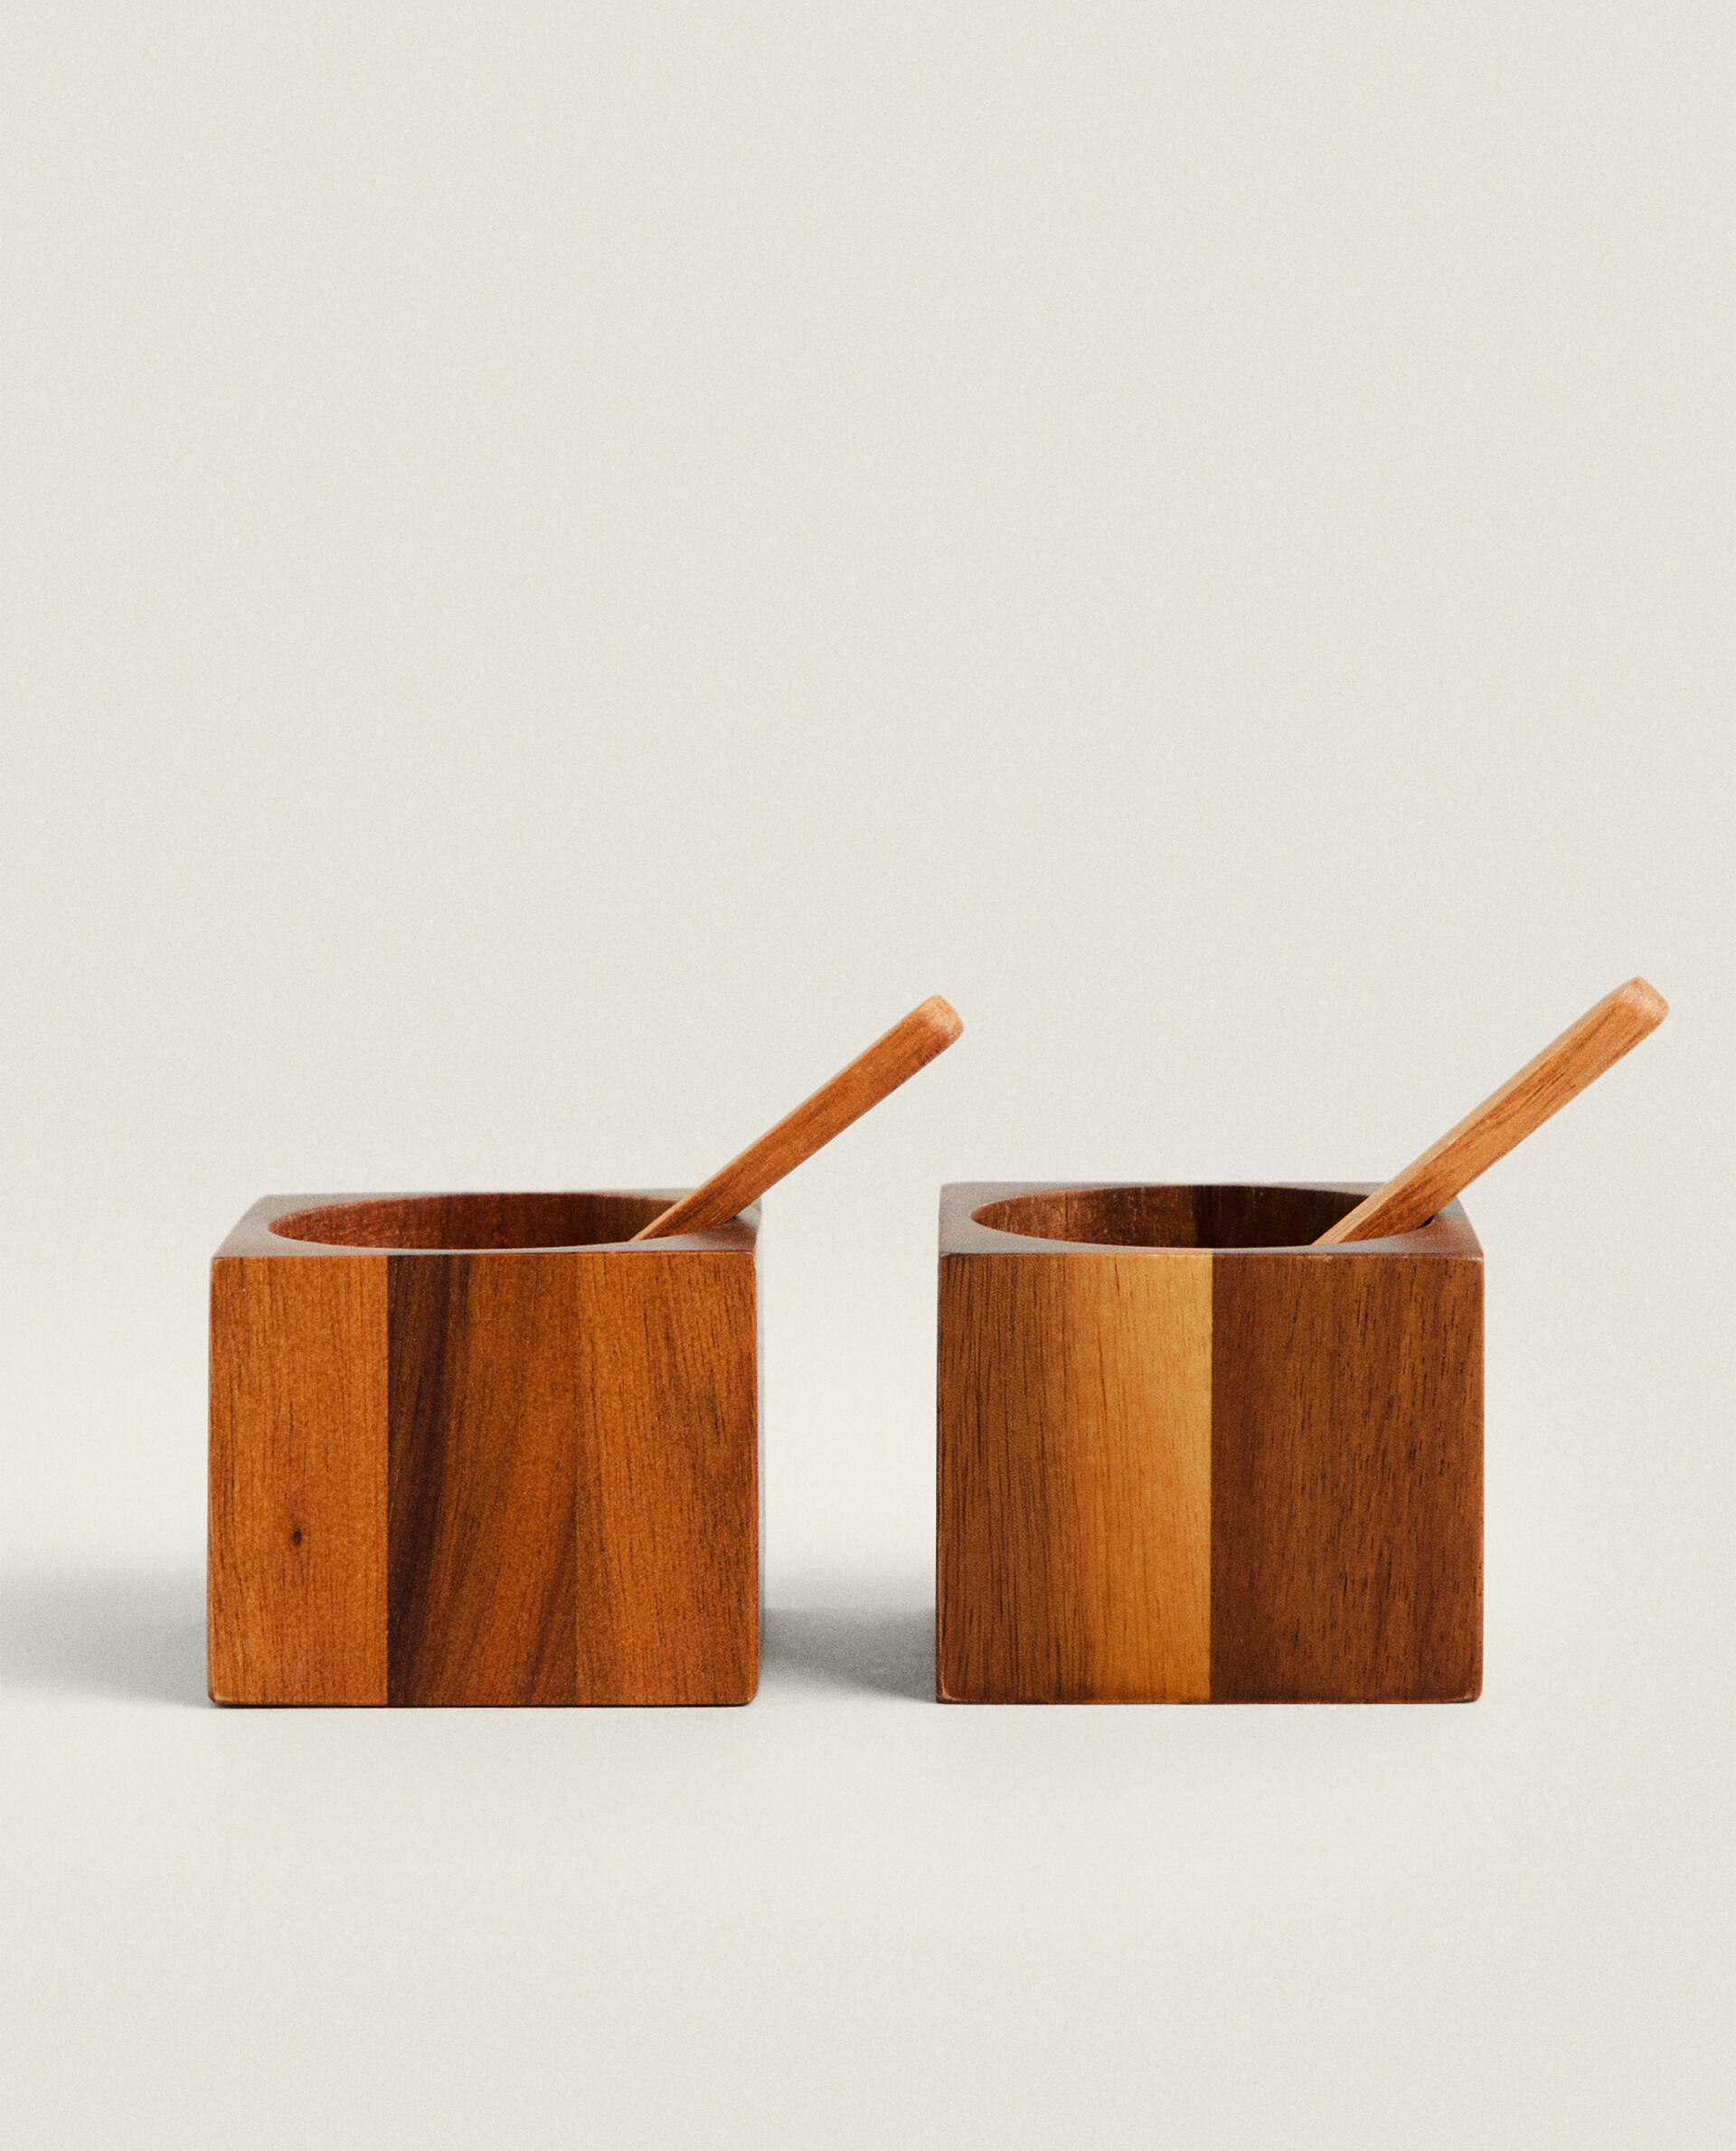 Набор деревянная соломка и перечница Zara Home, коричневый набор квадратных фильтров k